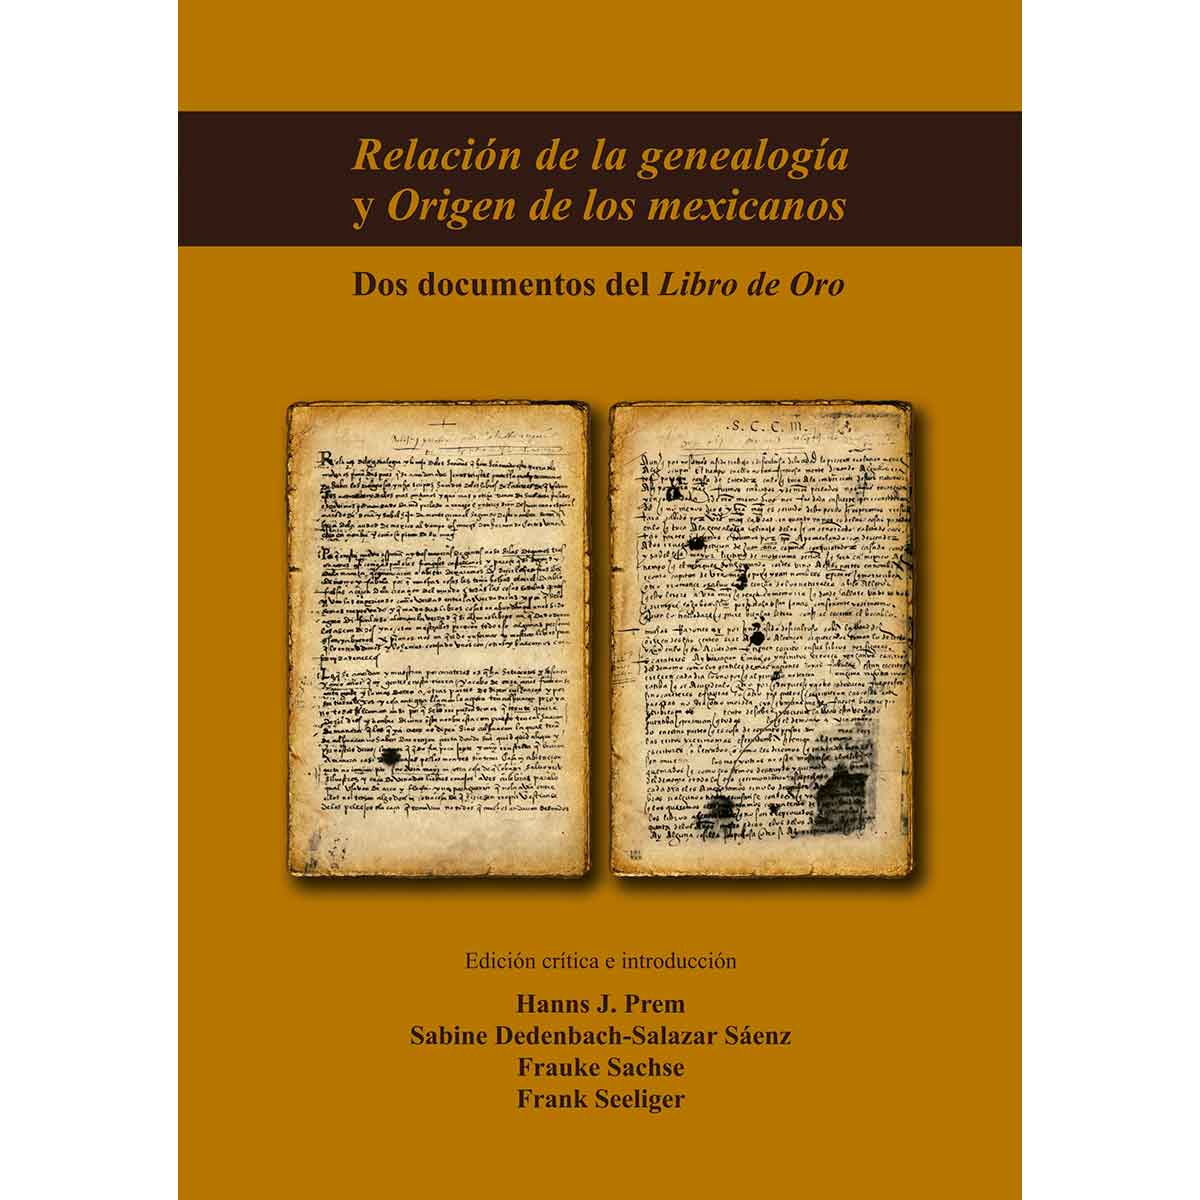 RELACIÓN DE LA GENEALOGÍA Y ORIGEN DE LOS MEXICANOS. DOS DOCUMENTOS DEL LIBRO DE ORO